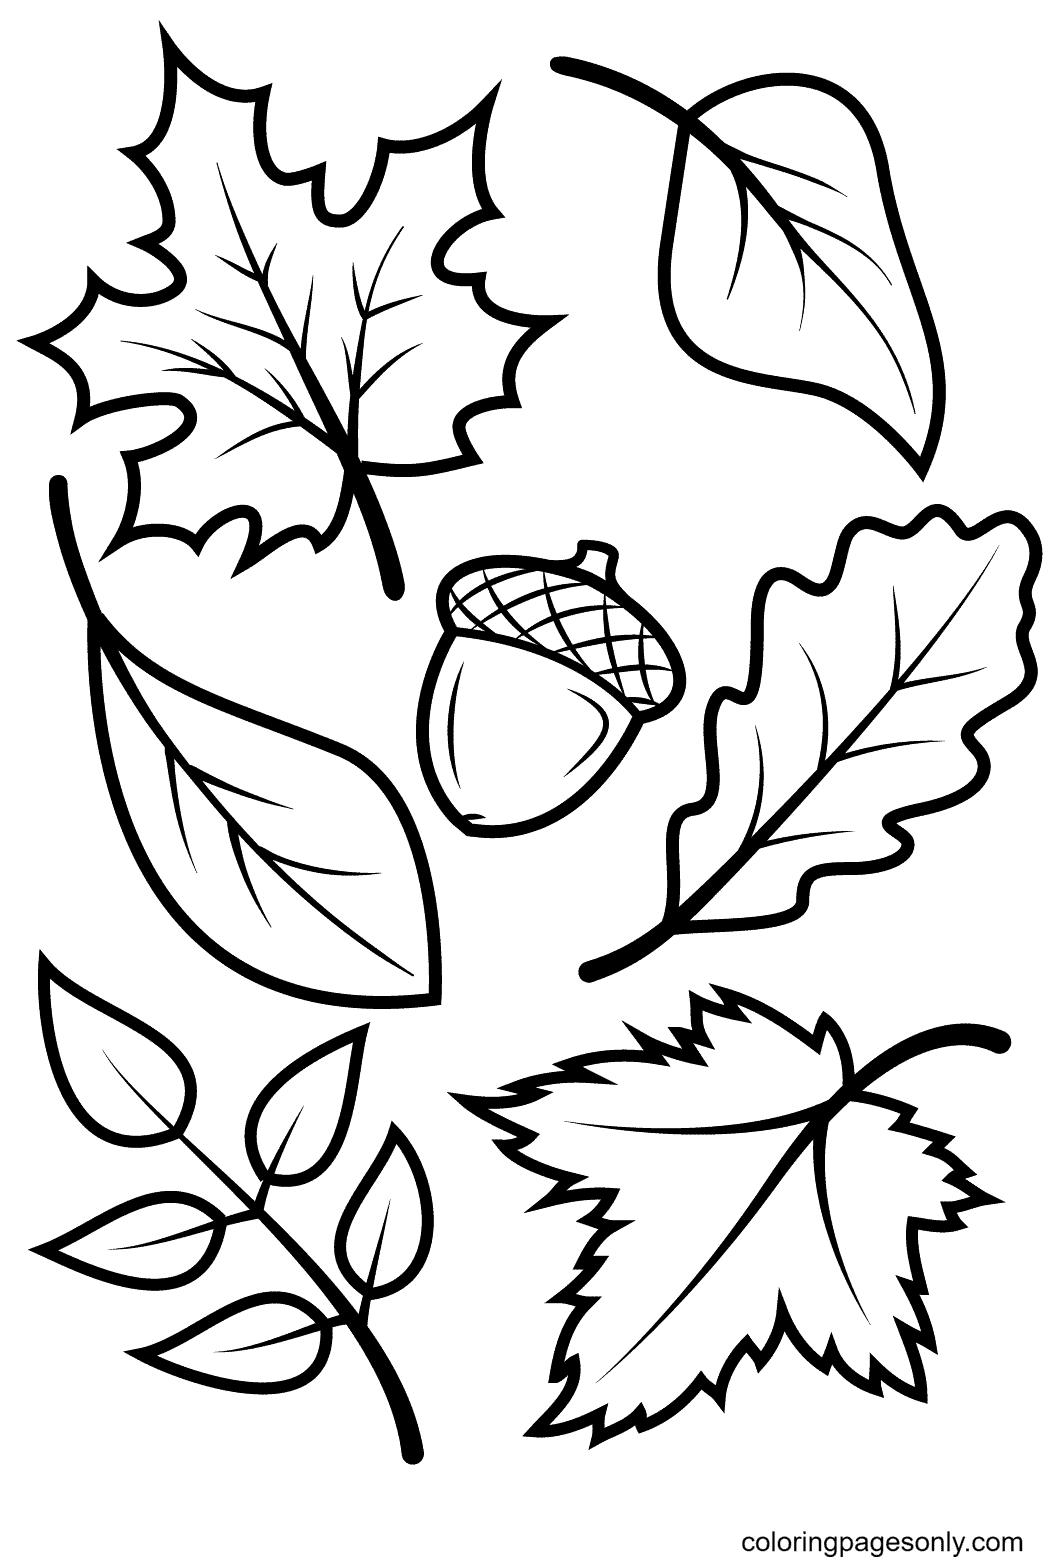 Folhas de outono e página para colorir de bolota